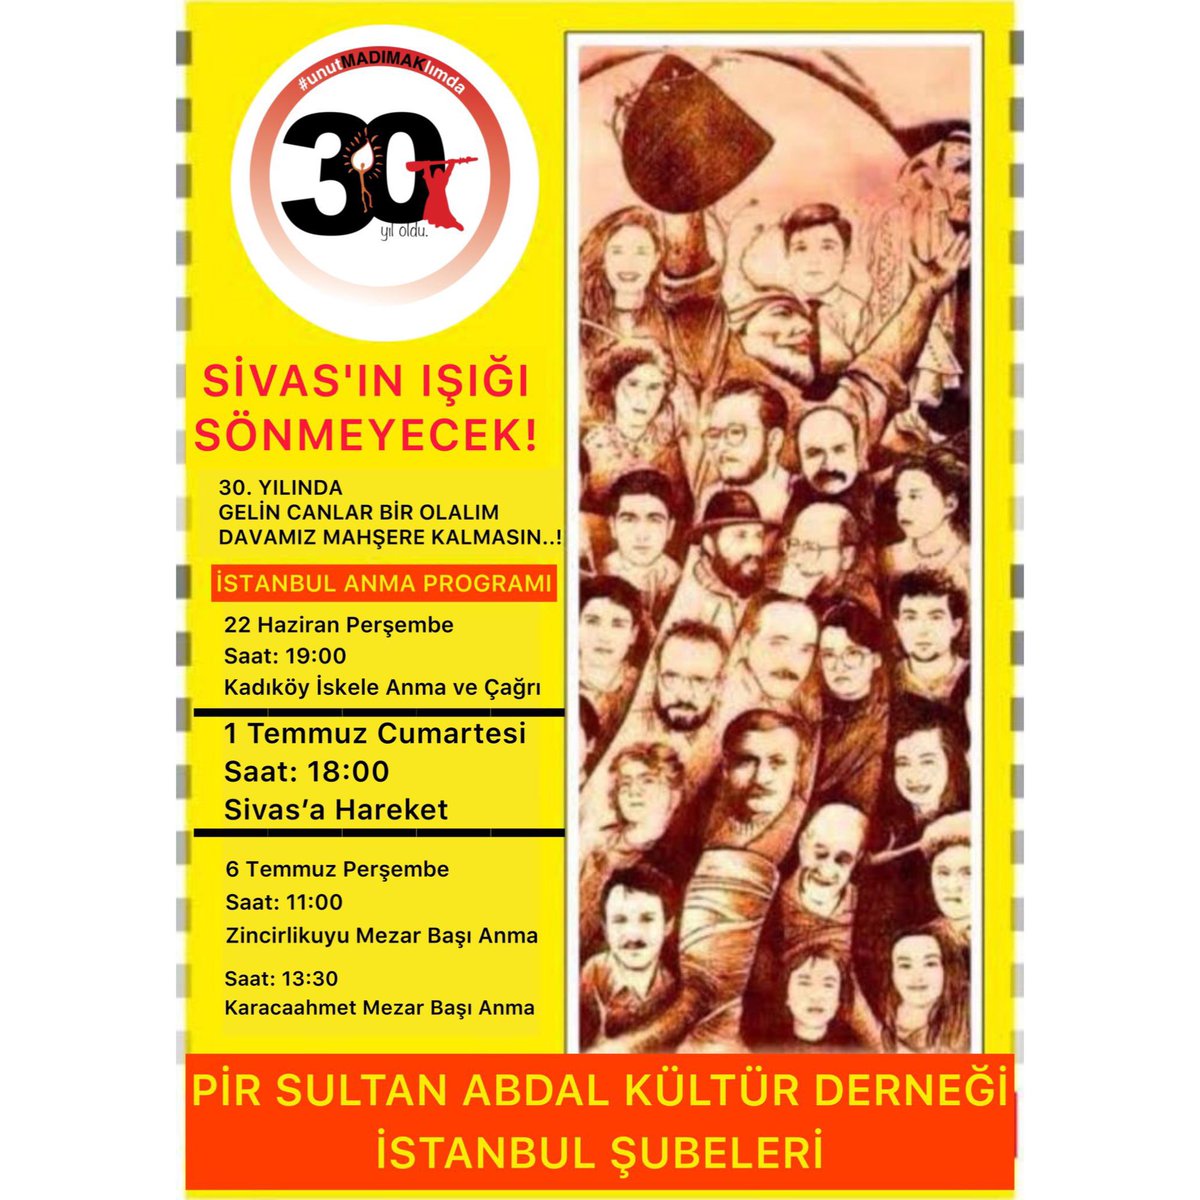 Şeriata karşı Laiklik
Zulme karşı Adalet
30. Yılında Sivas için alanlardayız!
#madımakkatliamı